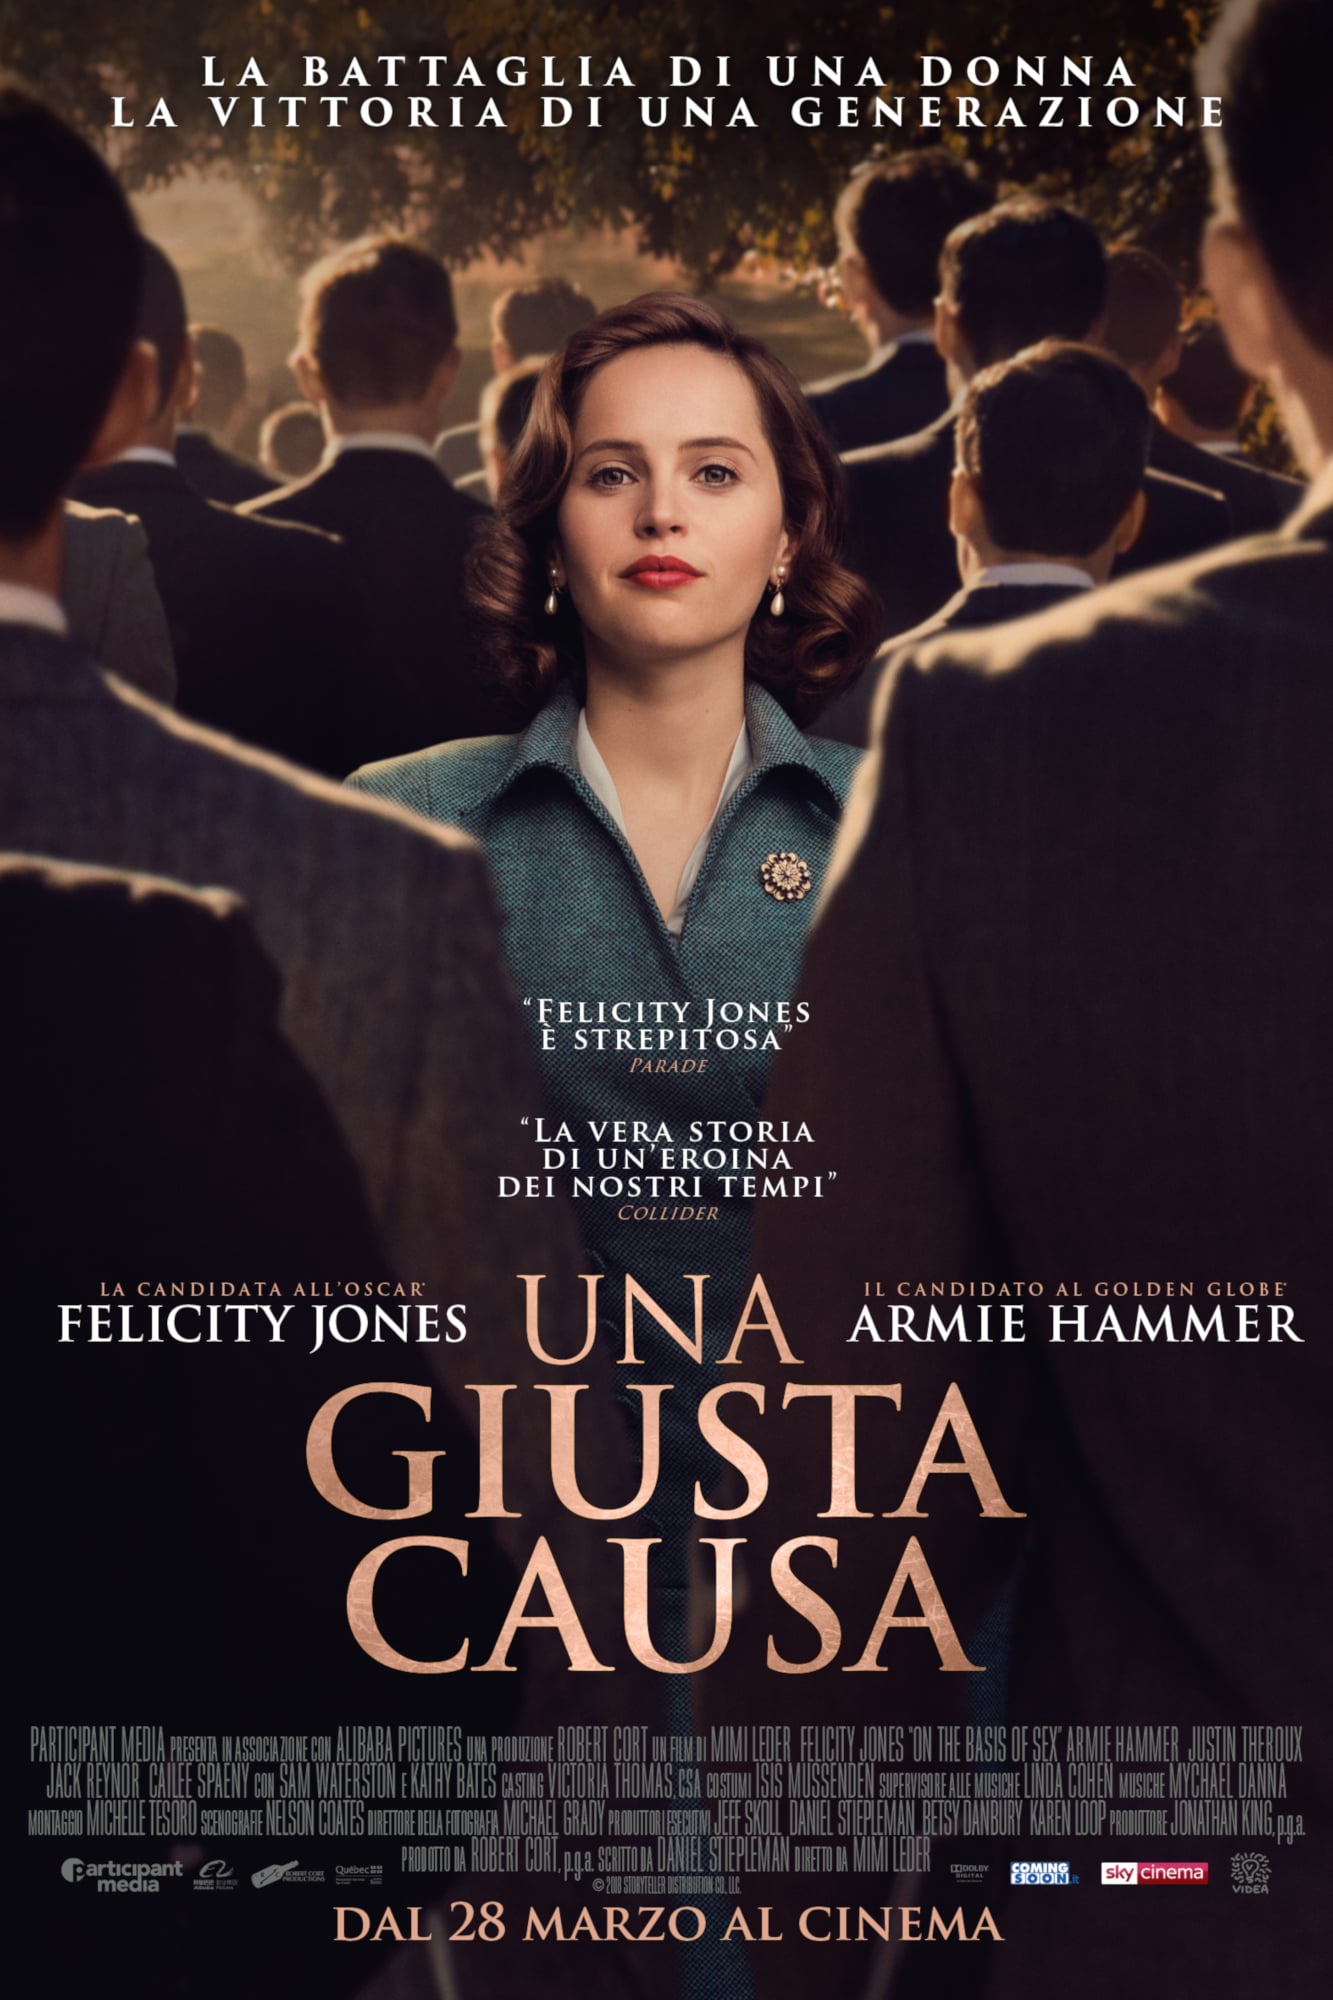 Poster for the movie "Una giusta causa"